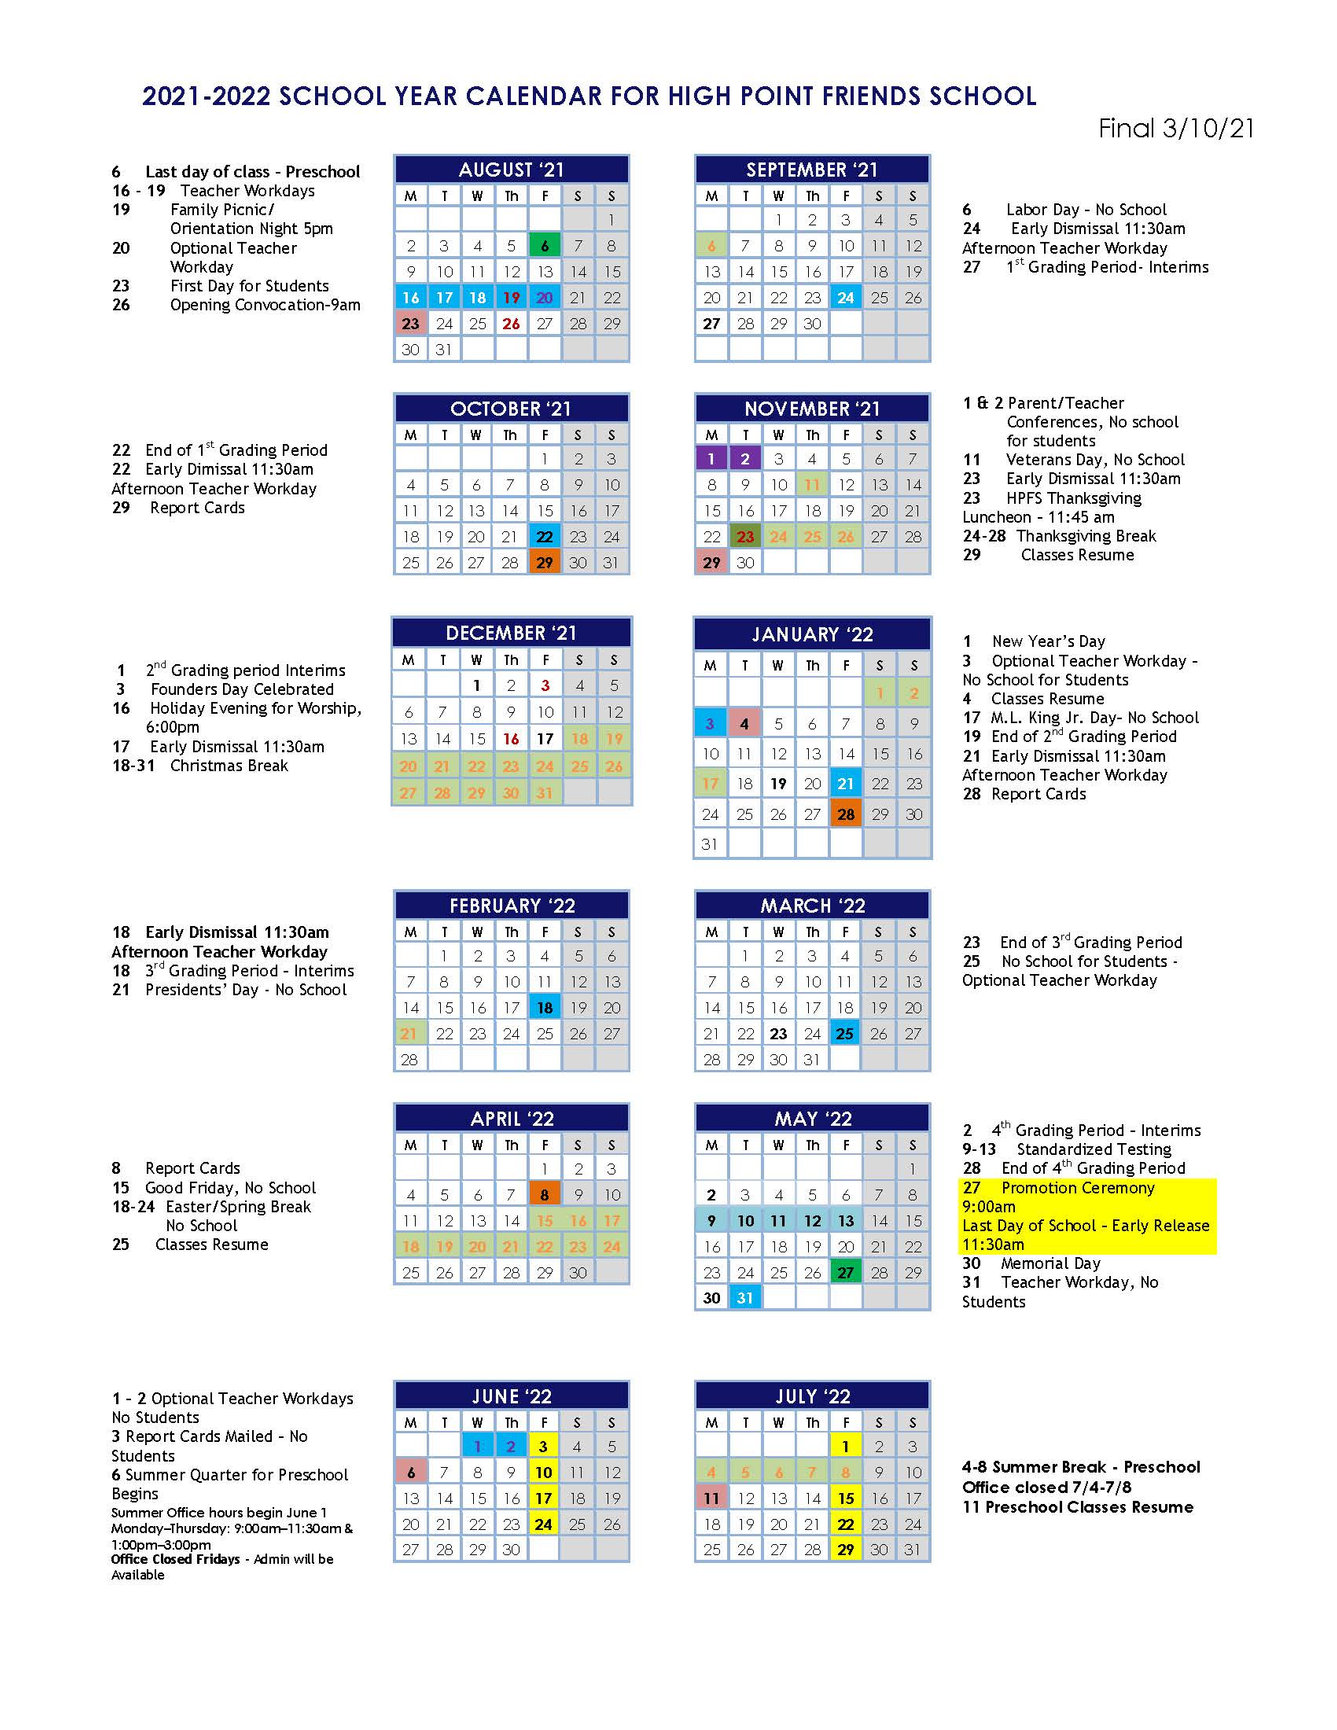 Forsyth Tech Calendar 2022 2021-2022 Calendar - High Point Friends School